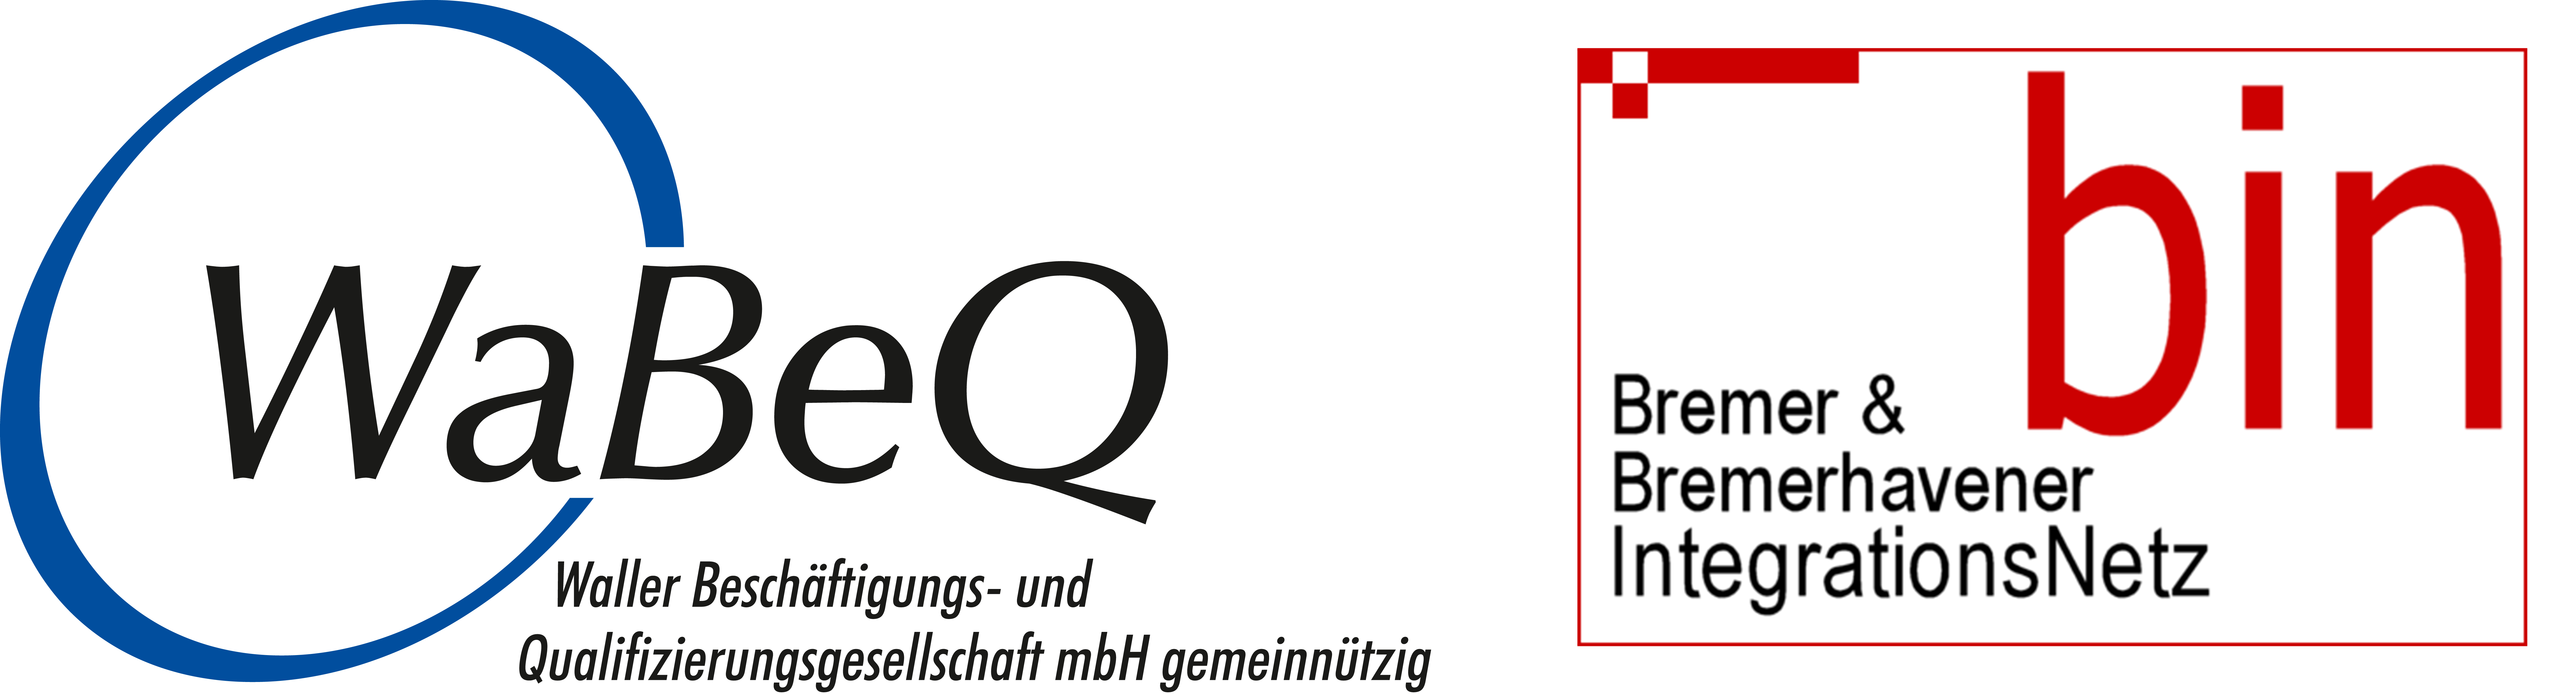 Logos WaBeQ und bin